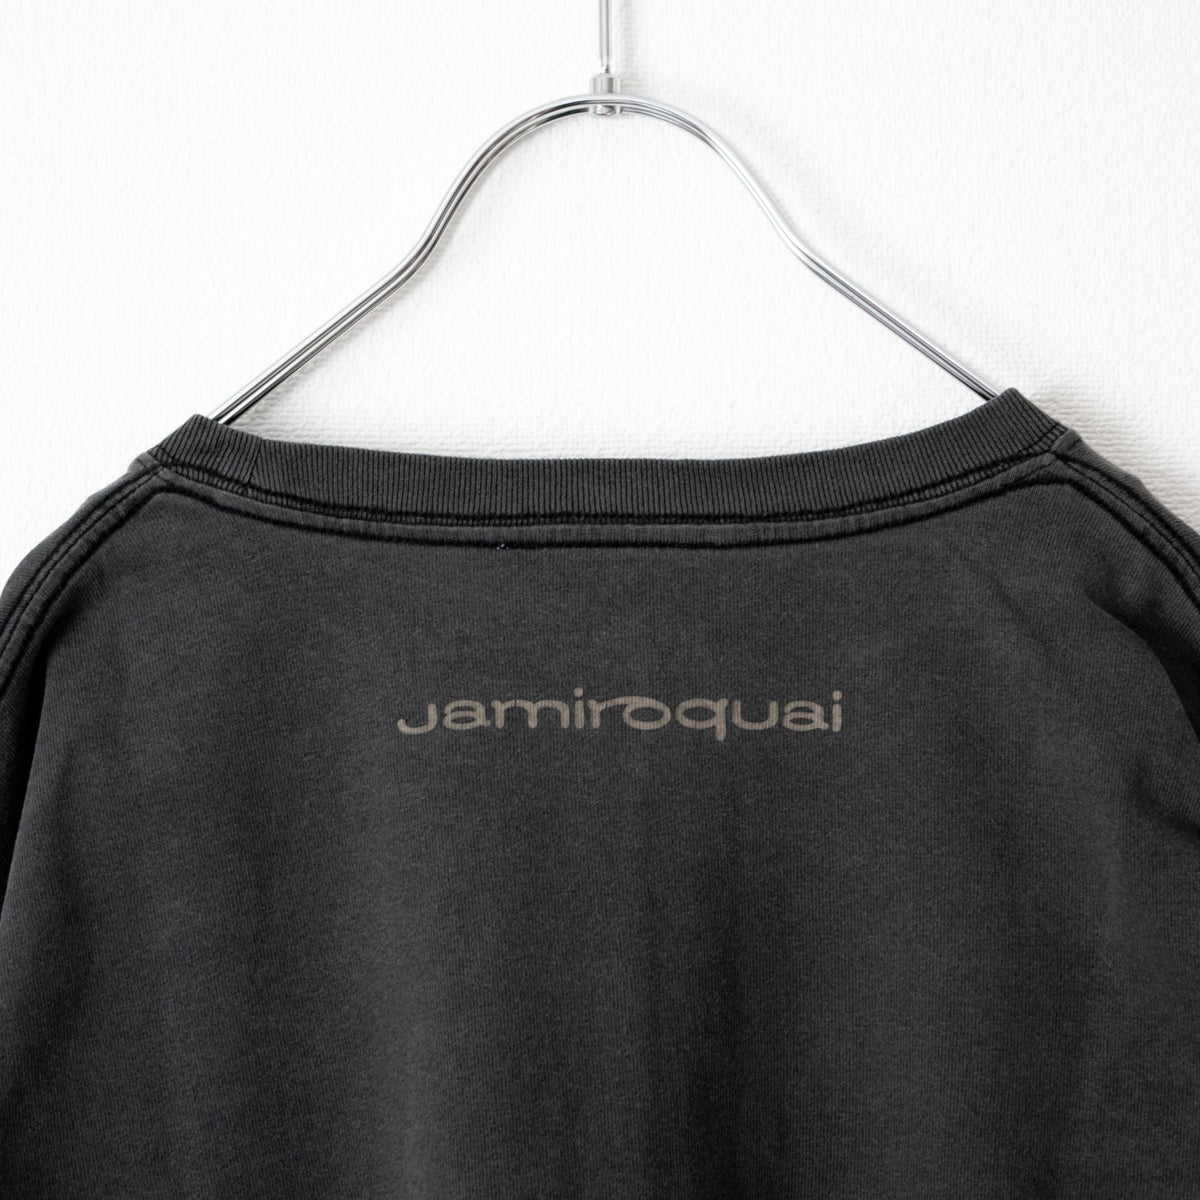 Jamiroquai ジャミロクワイ サークルロゴ Tシャツ BLACK